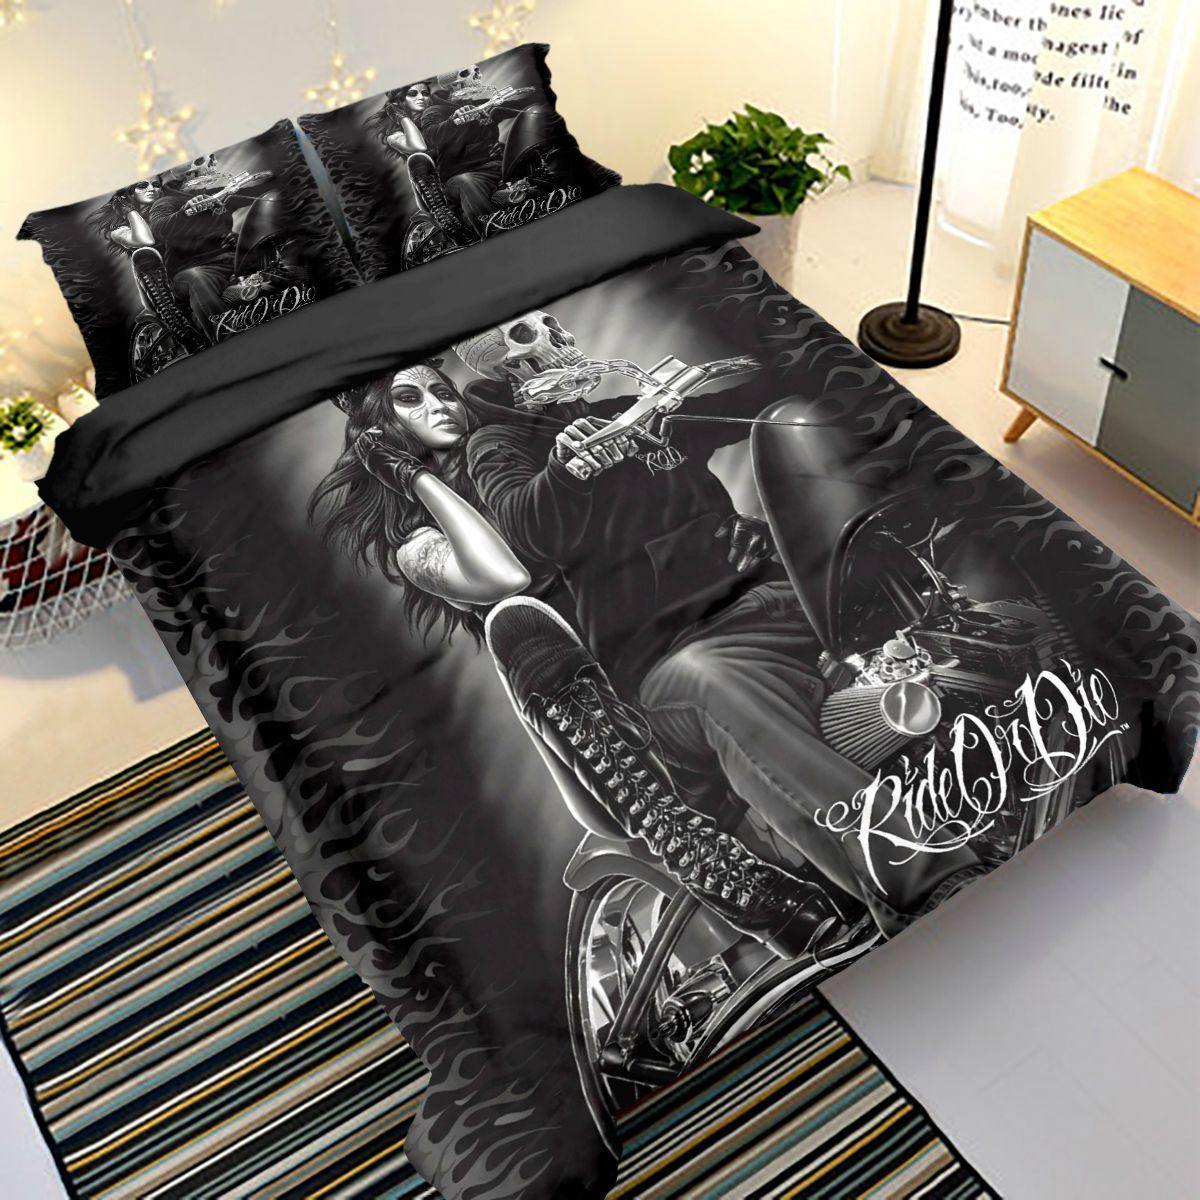 WONGS BEDDING dark style skull rider print bedding bedroom household goods - Wongs bedding